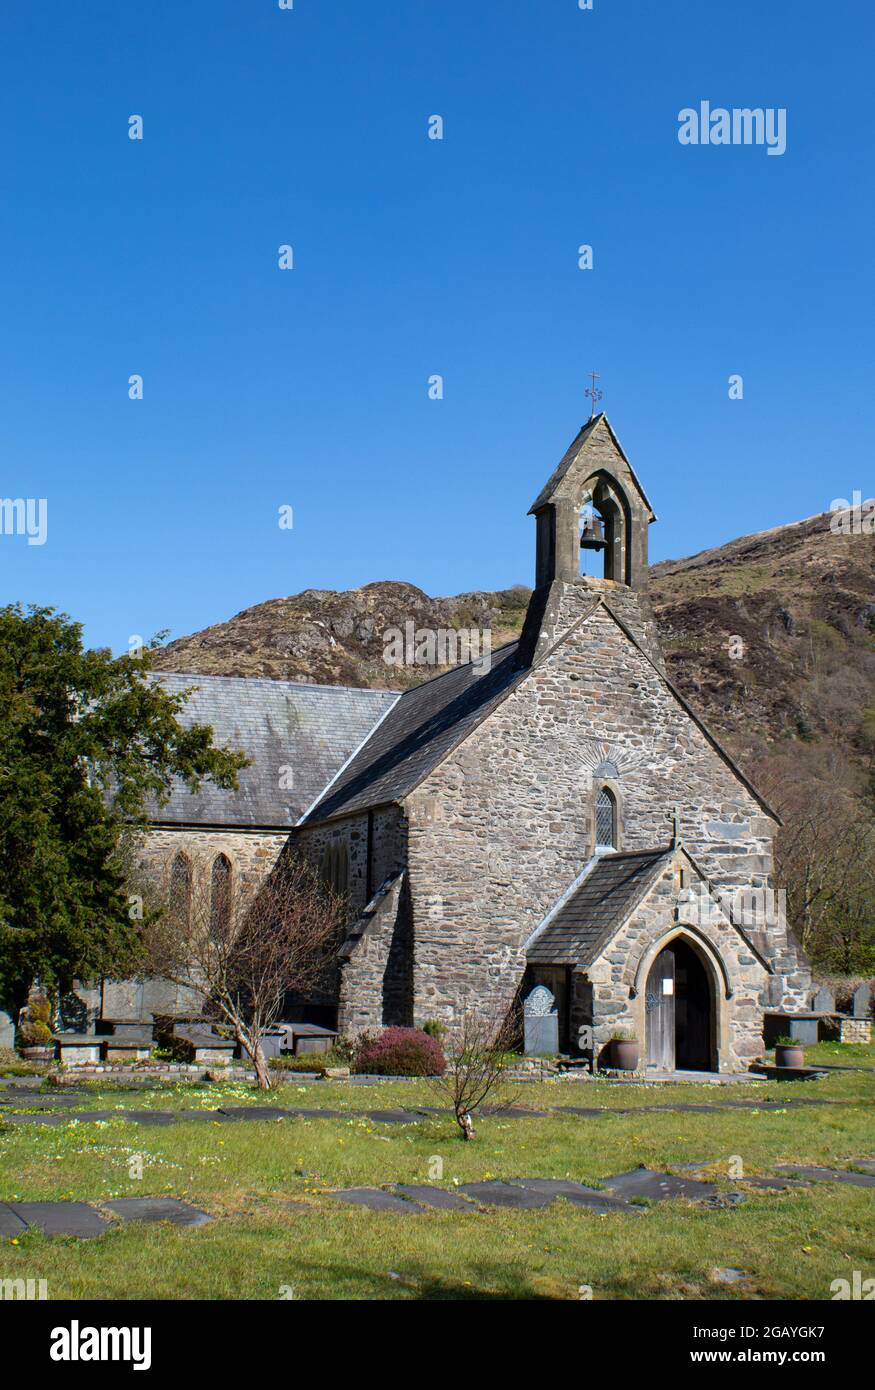 Beddgelert villaggio, Snowdonia, Galles. Vista della storica, bella chiesa vecchia di Santa Maria. Scatto verticale con spazio di copia. Foto Stock